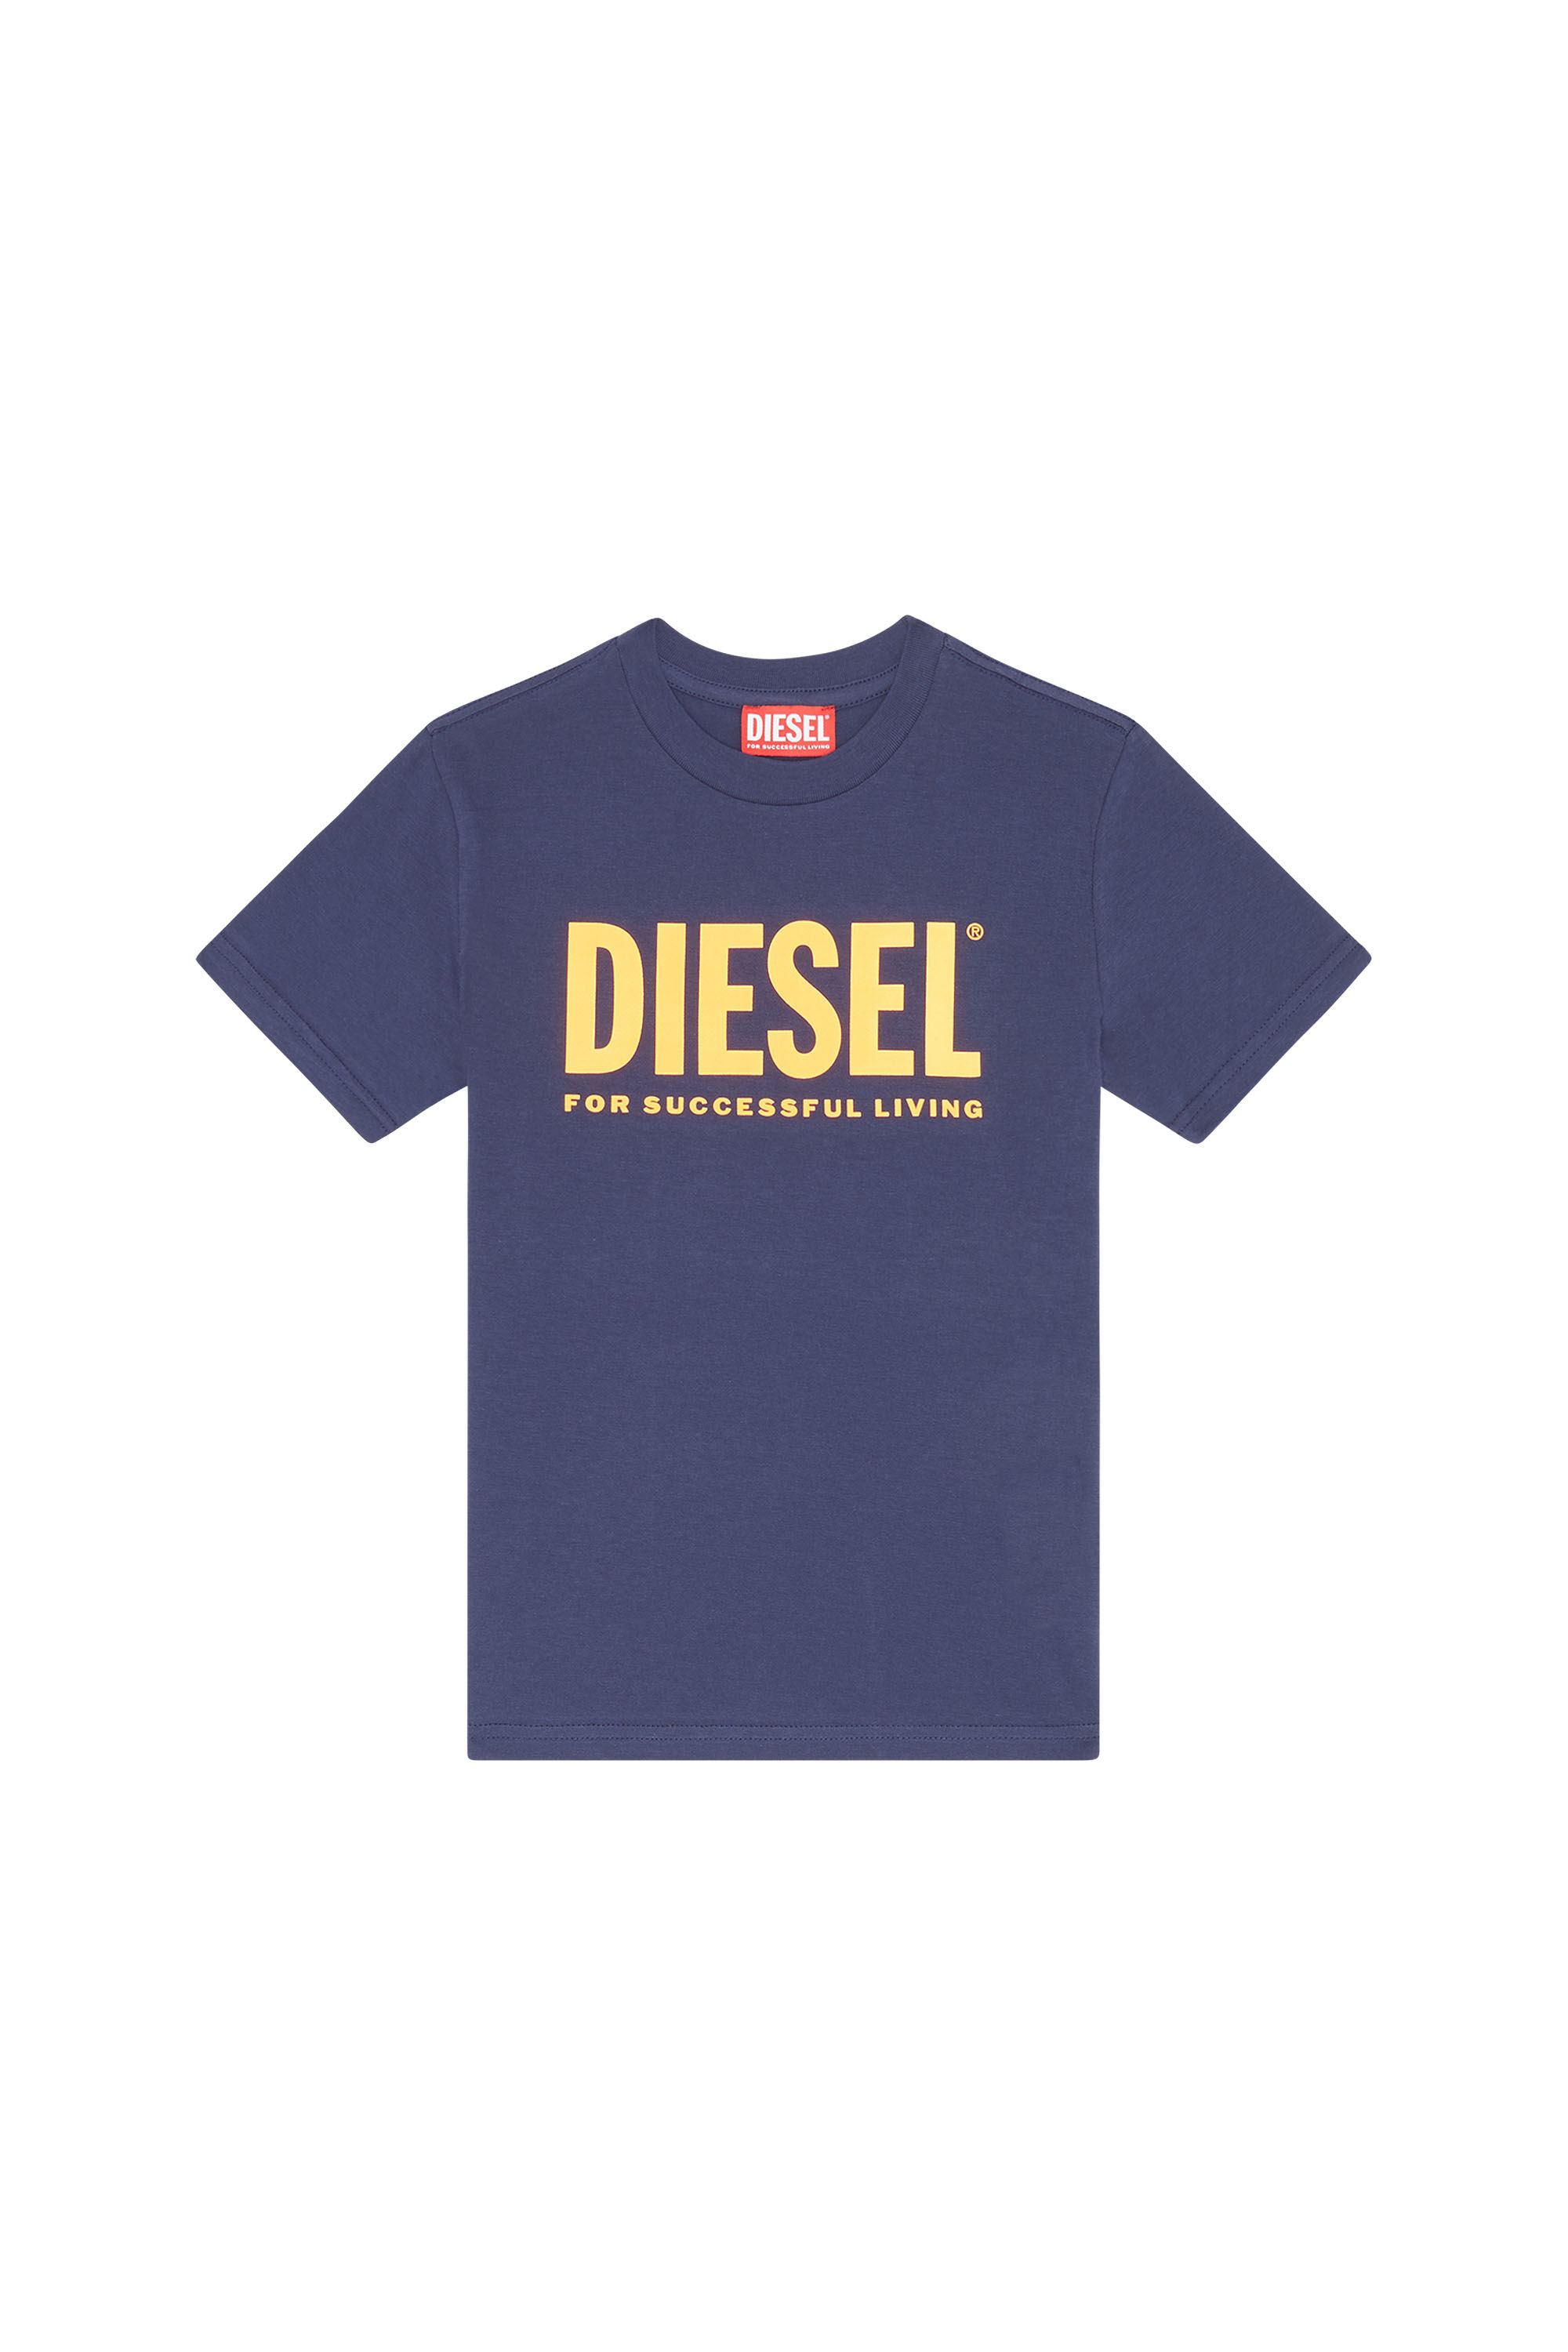 Diesel - TJUSTLOGO, Dark Blue - Image 1